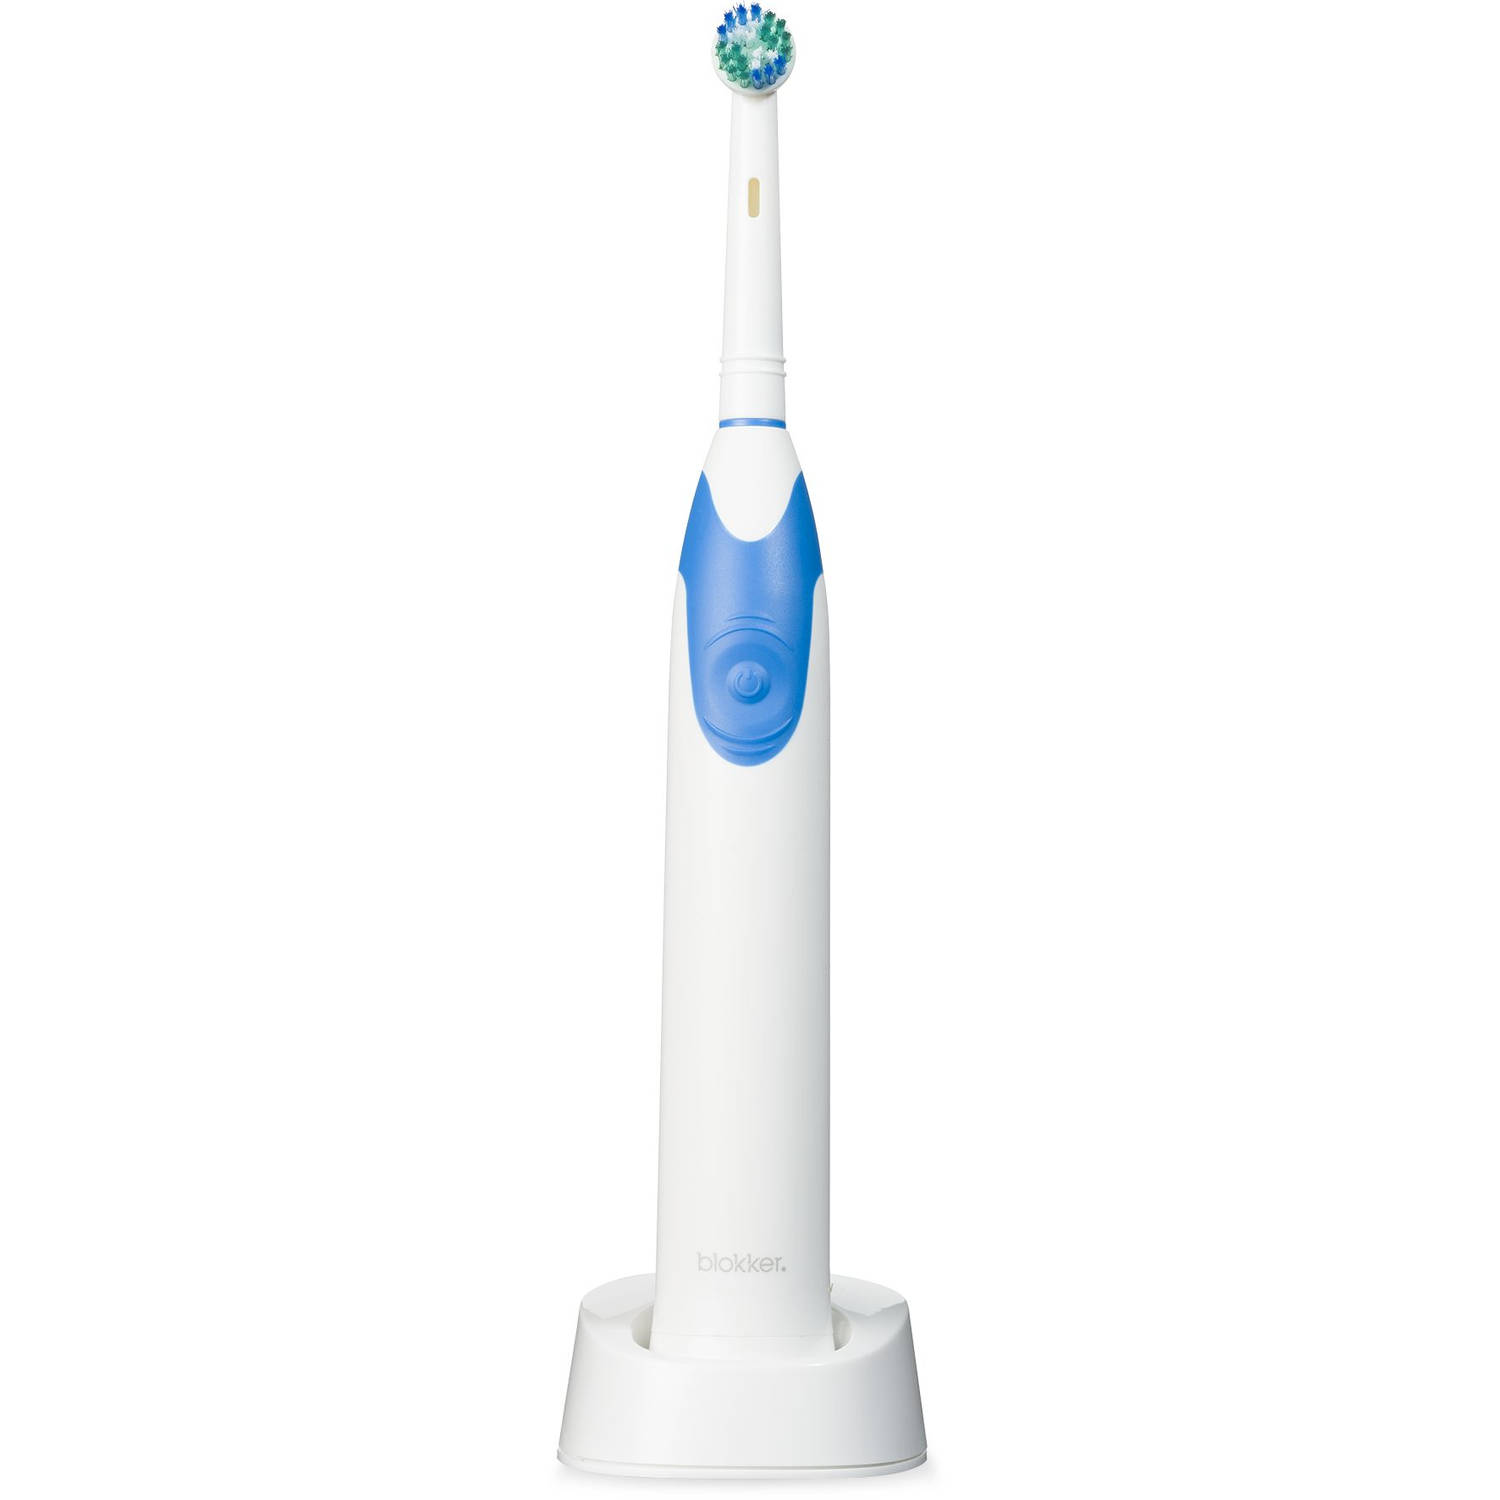 meten Zich verzetten tegen Bezit Blokker elektrische tandenborstel BL-19002 | Blokker